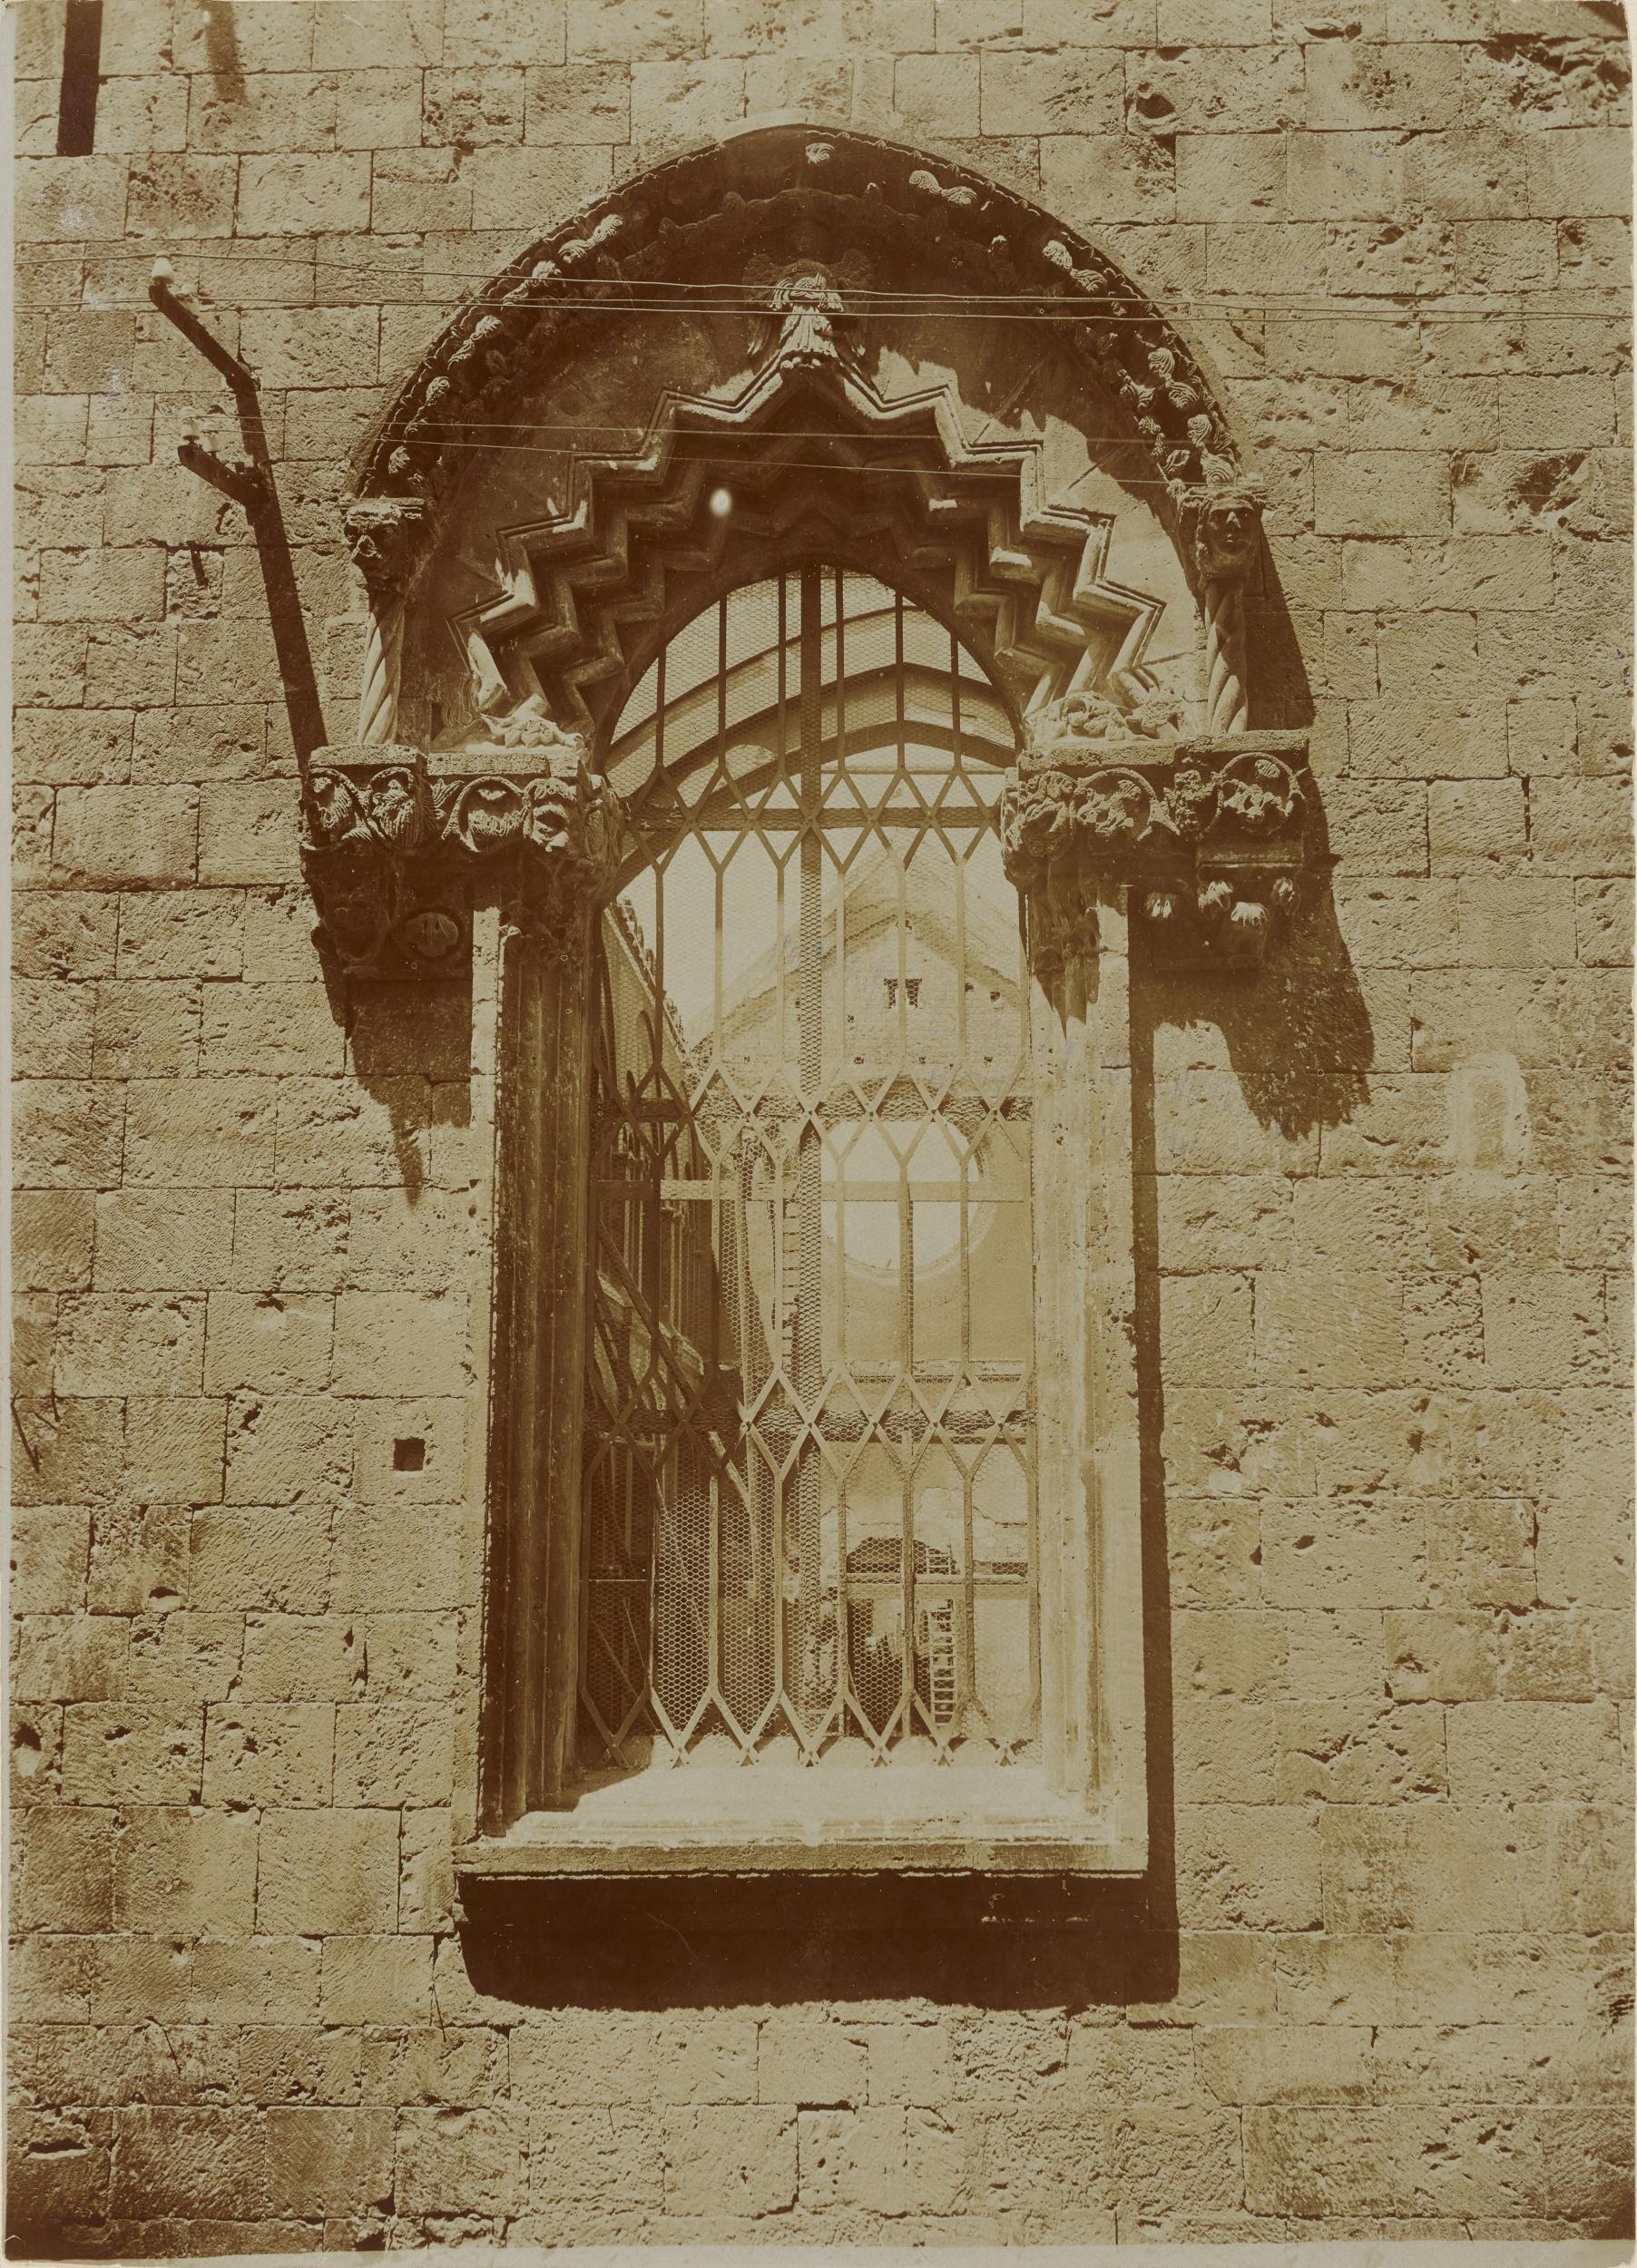 Fotografo non identificato, Conversano - Cattedrale, monofora del transetto, 1901-1910, aristotipo, MPI155323